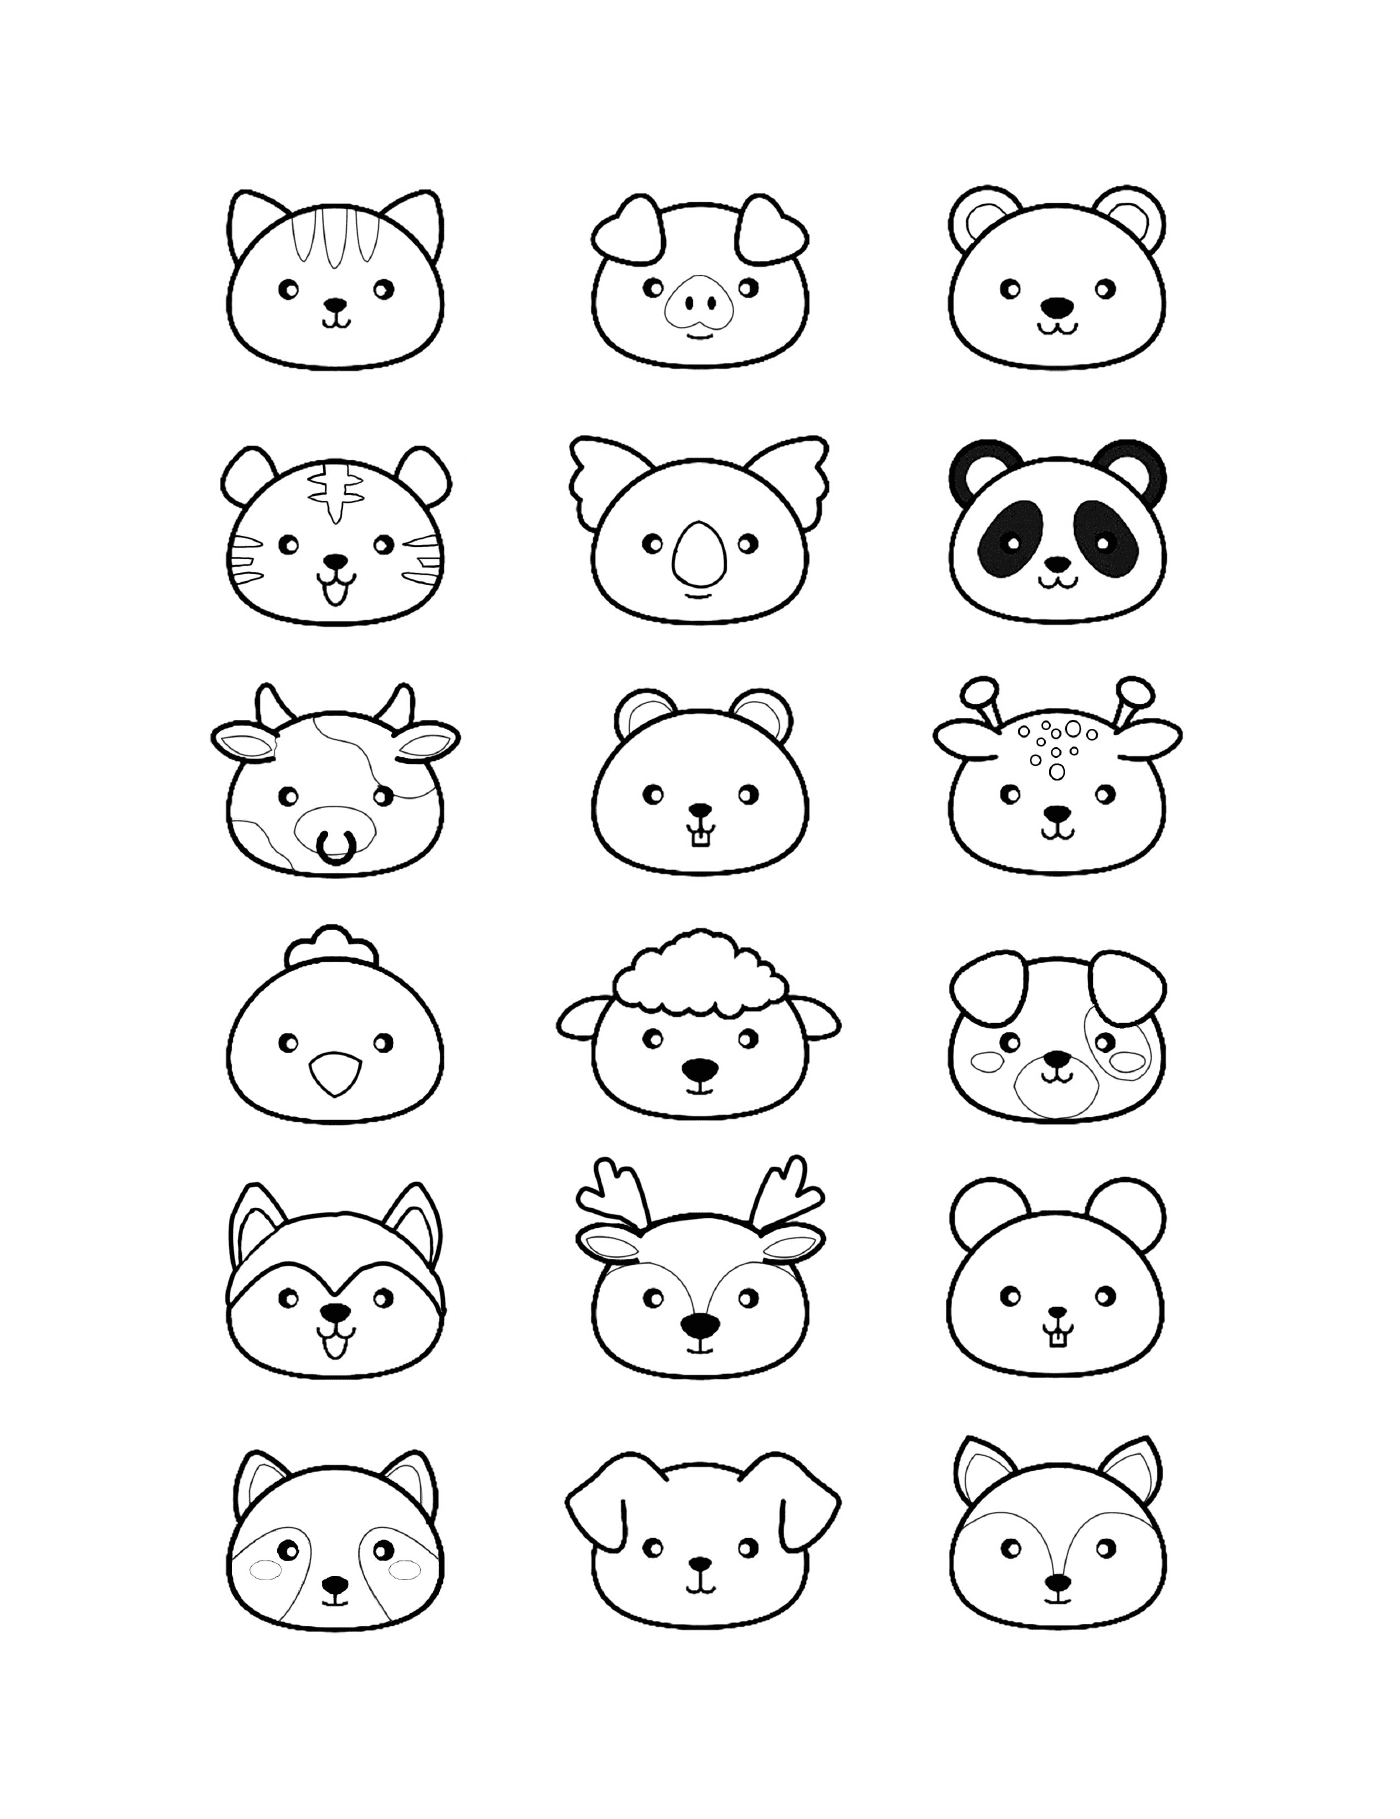  Verschiedene Gesichter von Kawaii-Tieren 